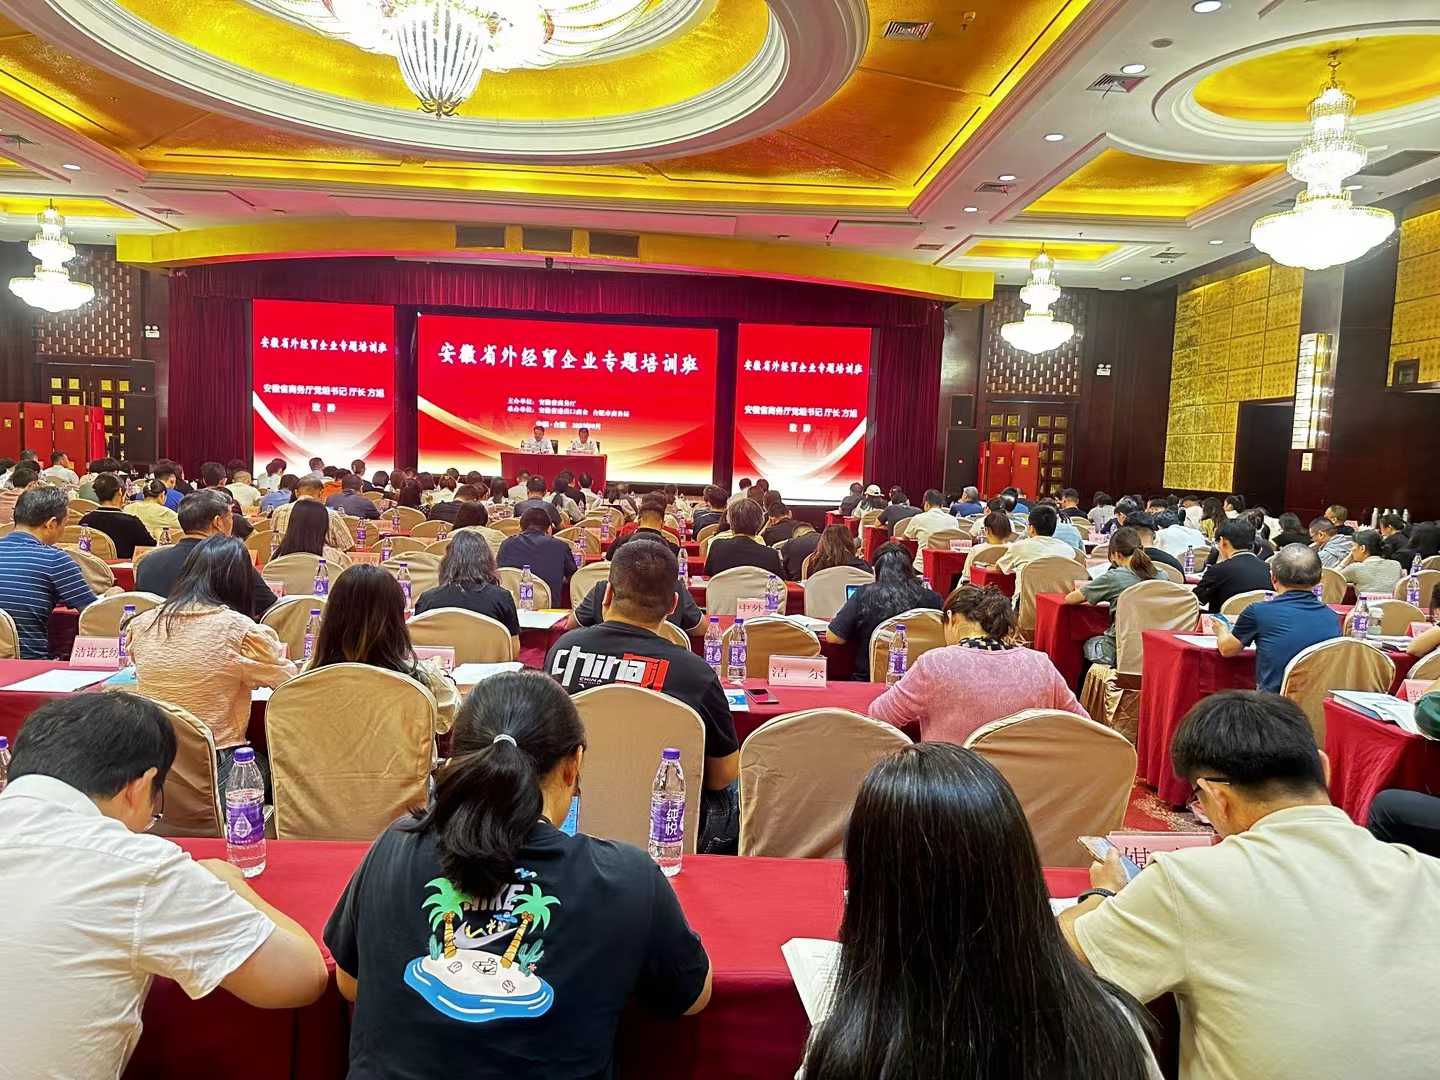 Felicitaciones por la exitosa apertura del curso de capacitación especial para empresas económicas y comerciales extranjeras en la provincia de Anhui.